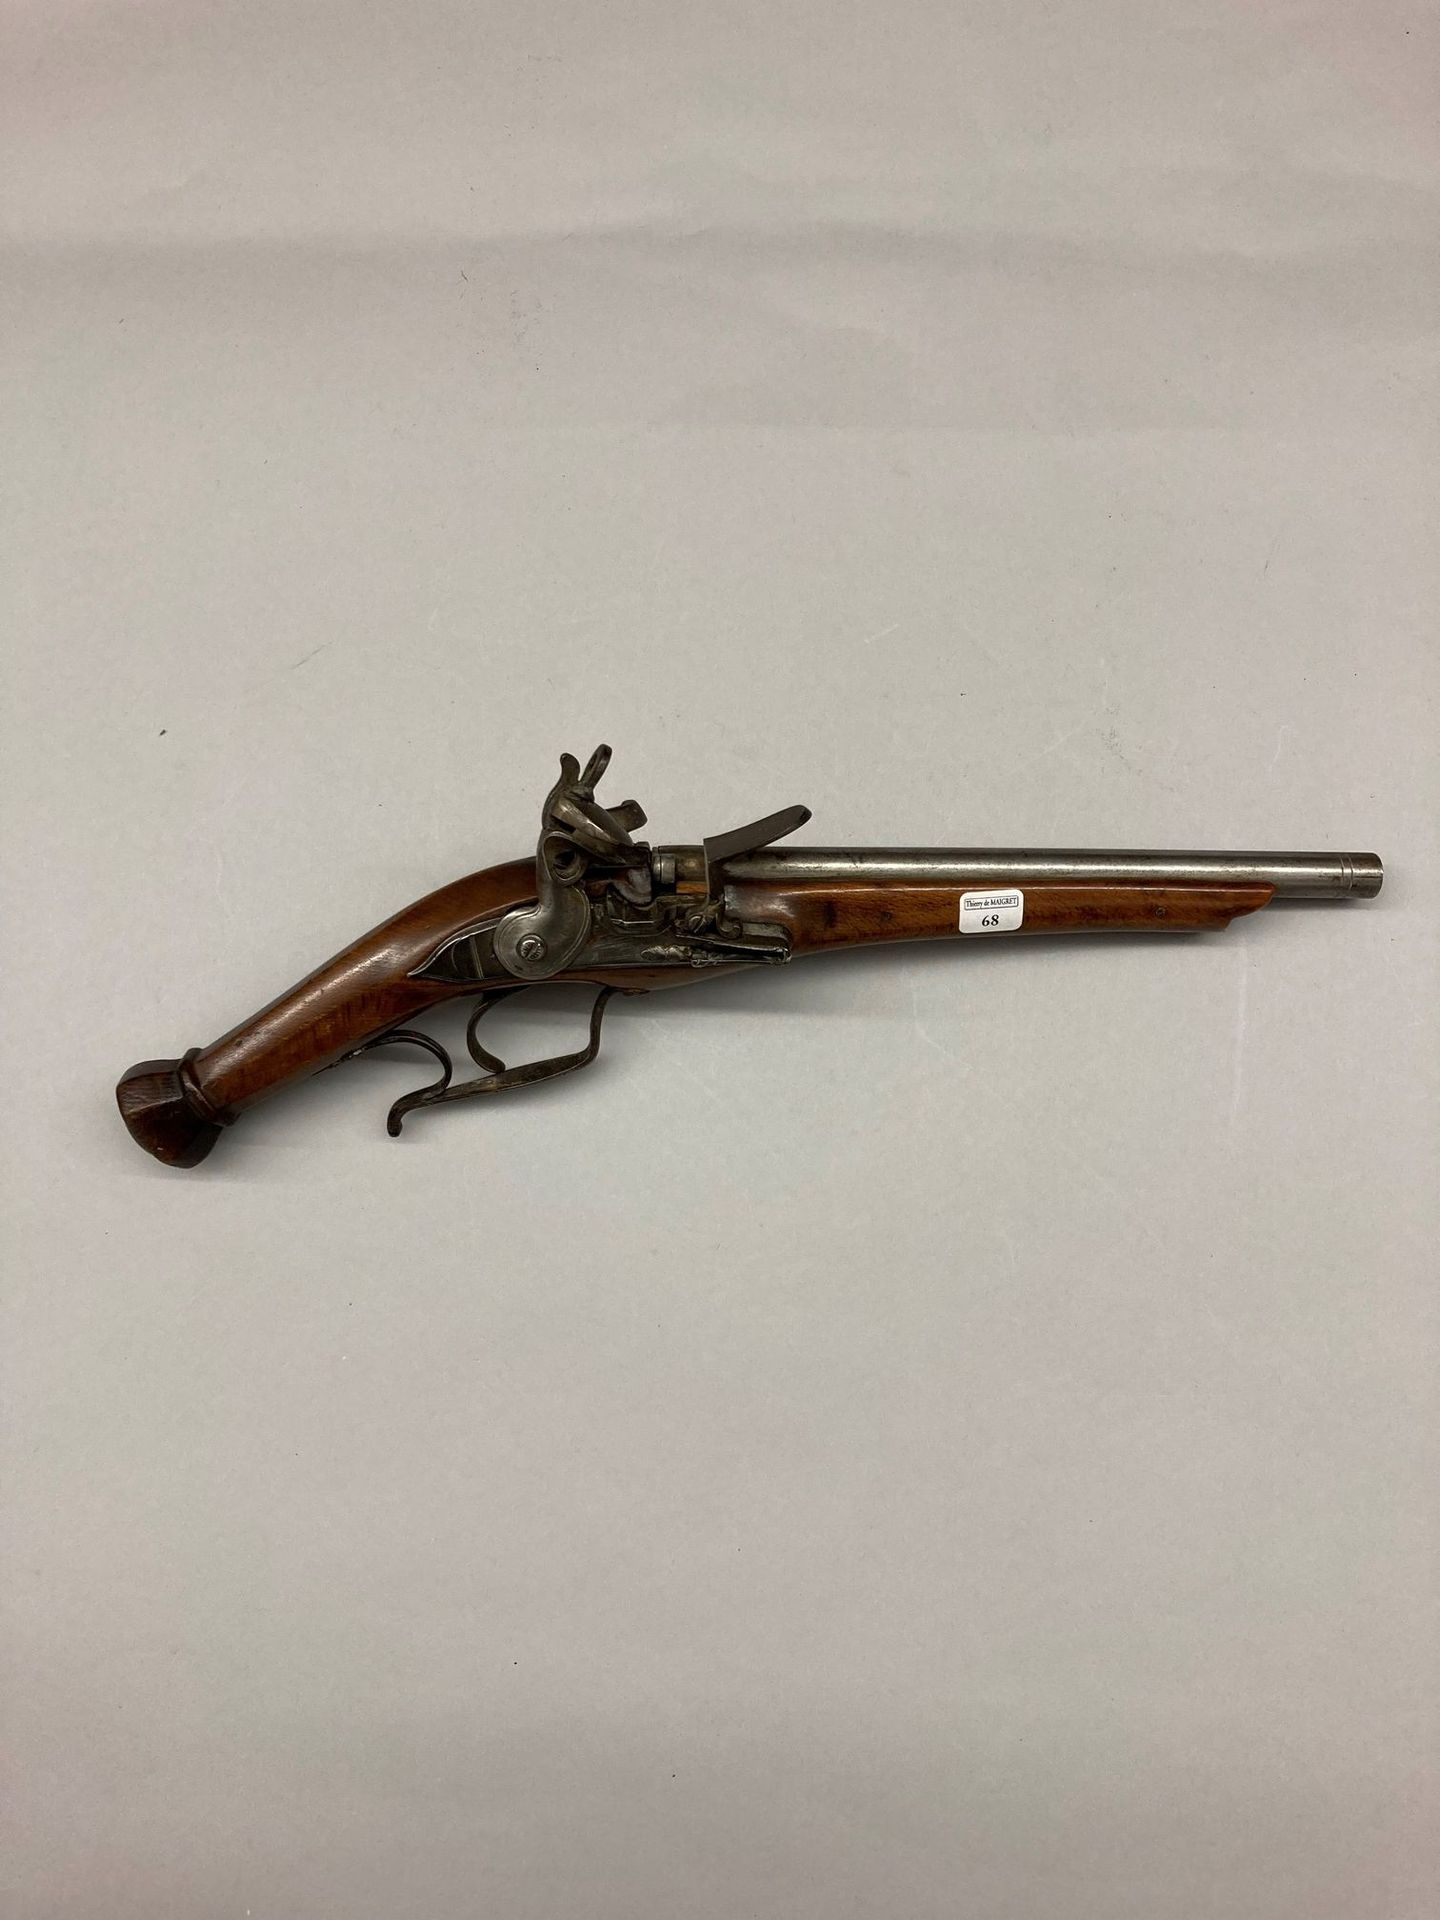 Null 奇怪的燧发枪，被改装成后膛装弹针锁，铁制配件，20世纪，长度：44.5厘米

参考 27